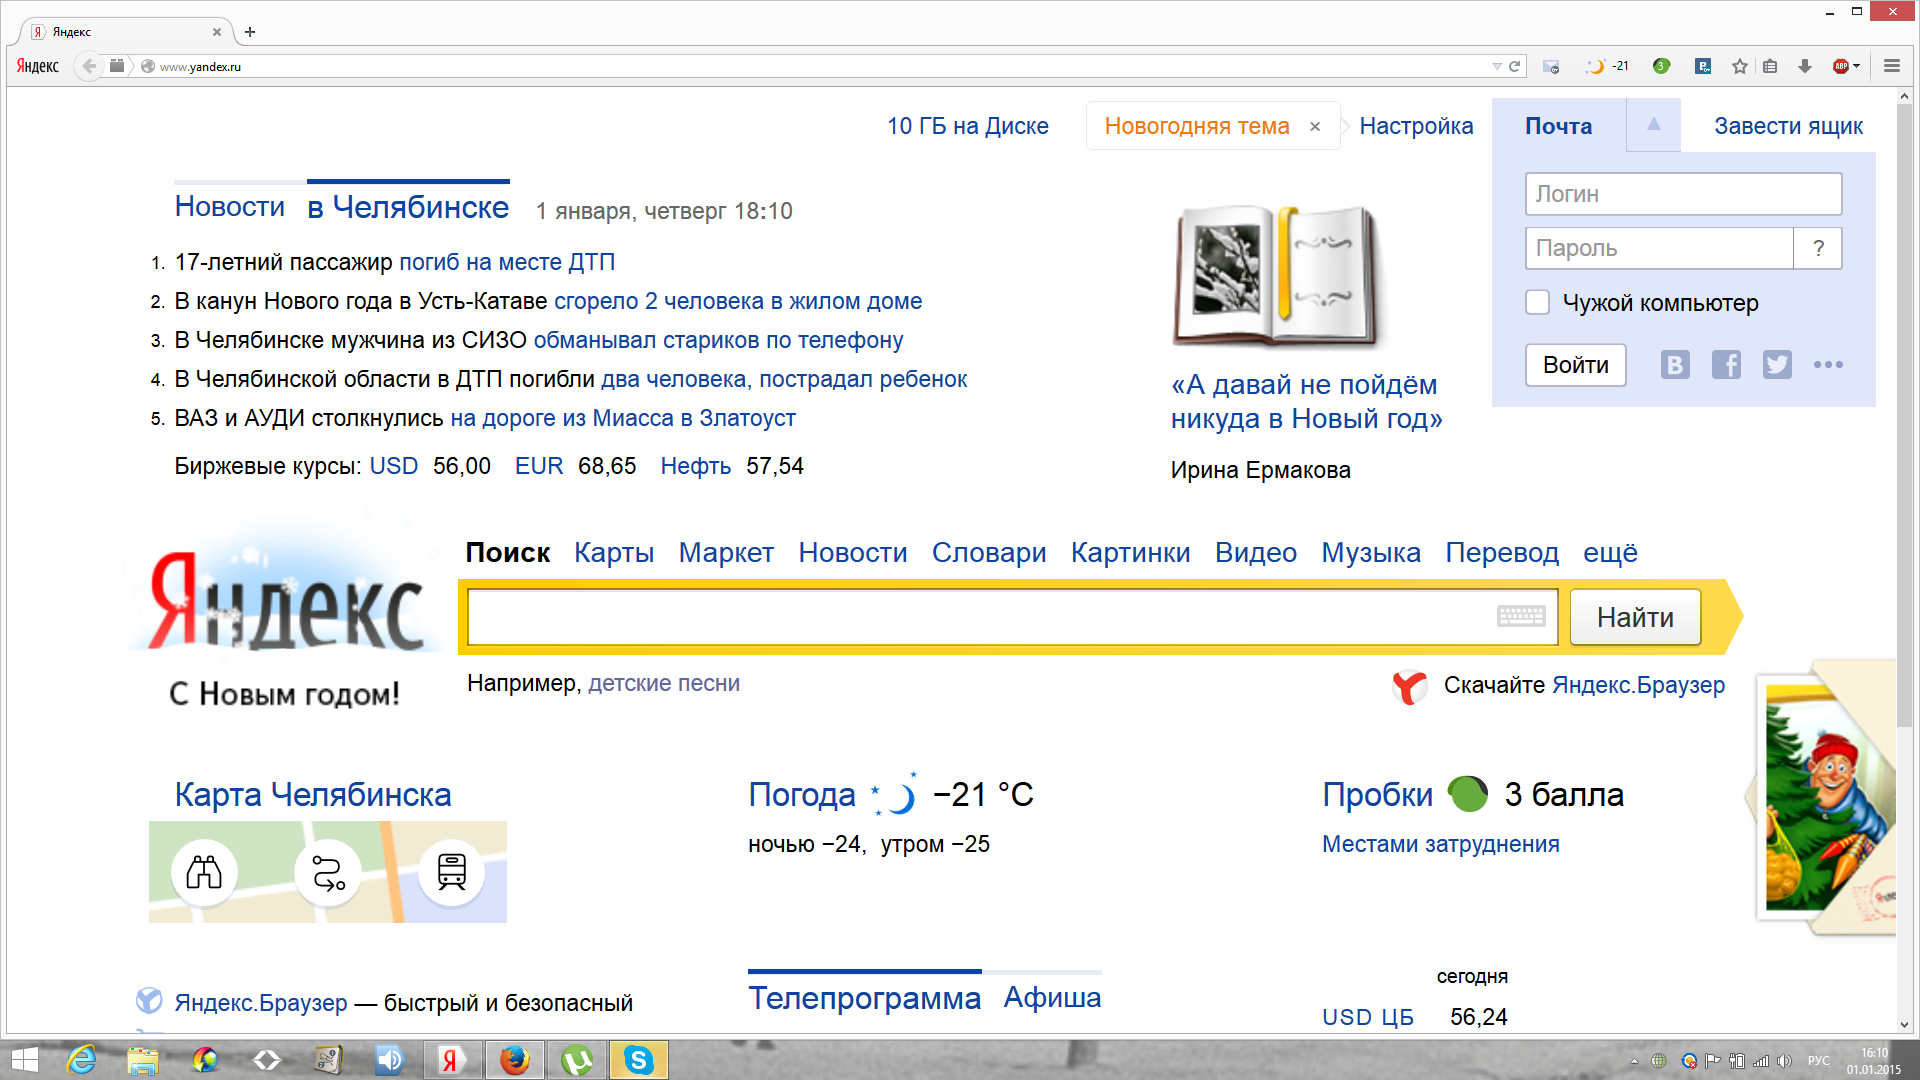 Как сделать новости на главной странице яндекса. Скриншот главной страницы Яндекса.